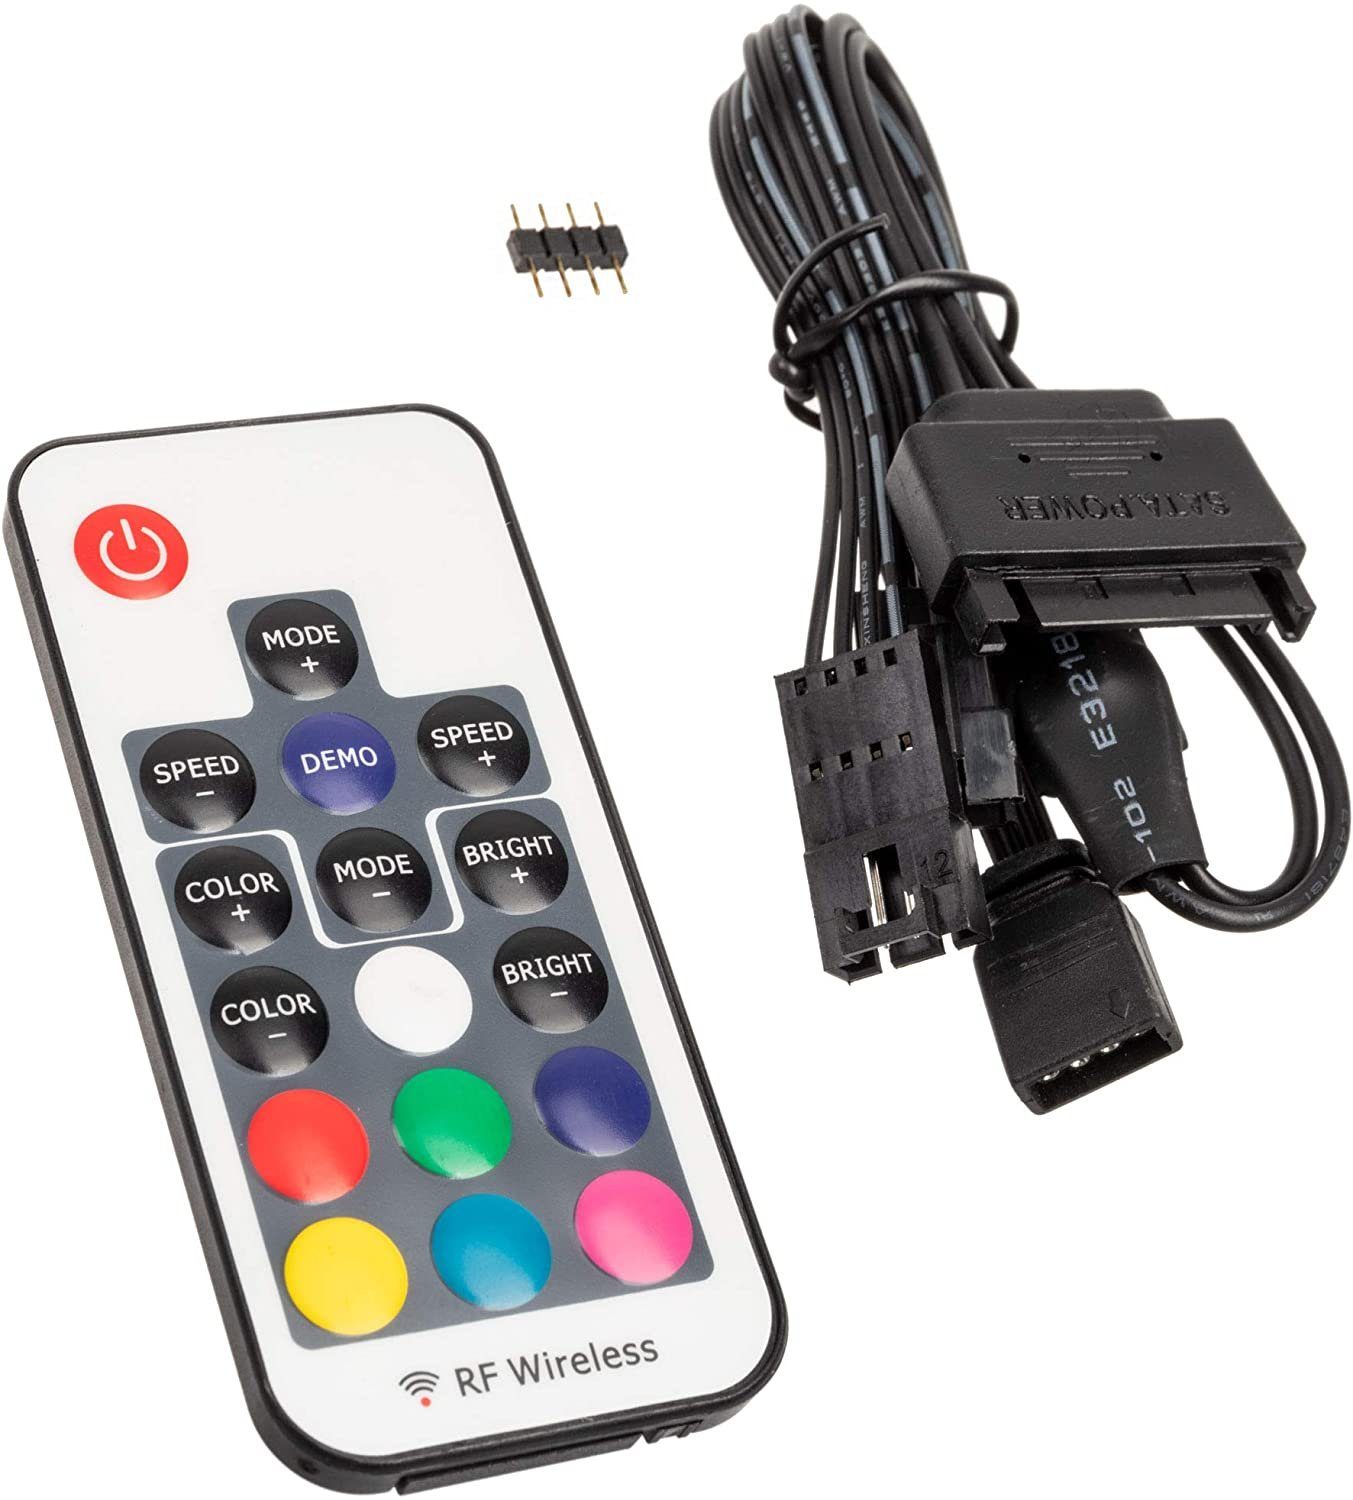 Kolink LED Stripe »Inspire L2 ARGB Controller«, 4-Pin, 12V, Gaming RGB  Controller SATA für digital adressierbare RGB-LEDs mit RF-Fernbedienung,  über 300 Farbeinstellungen, schwarz online kaufen | OTTO